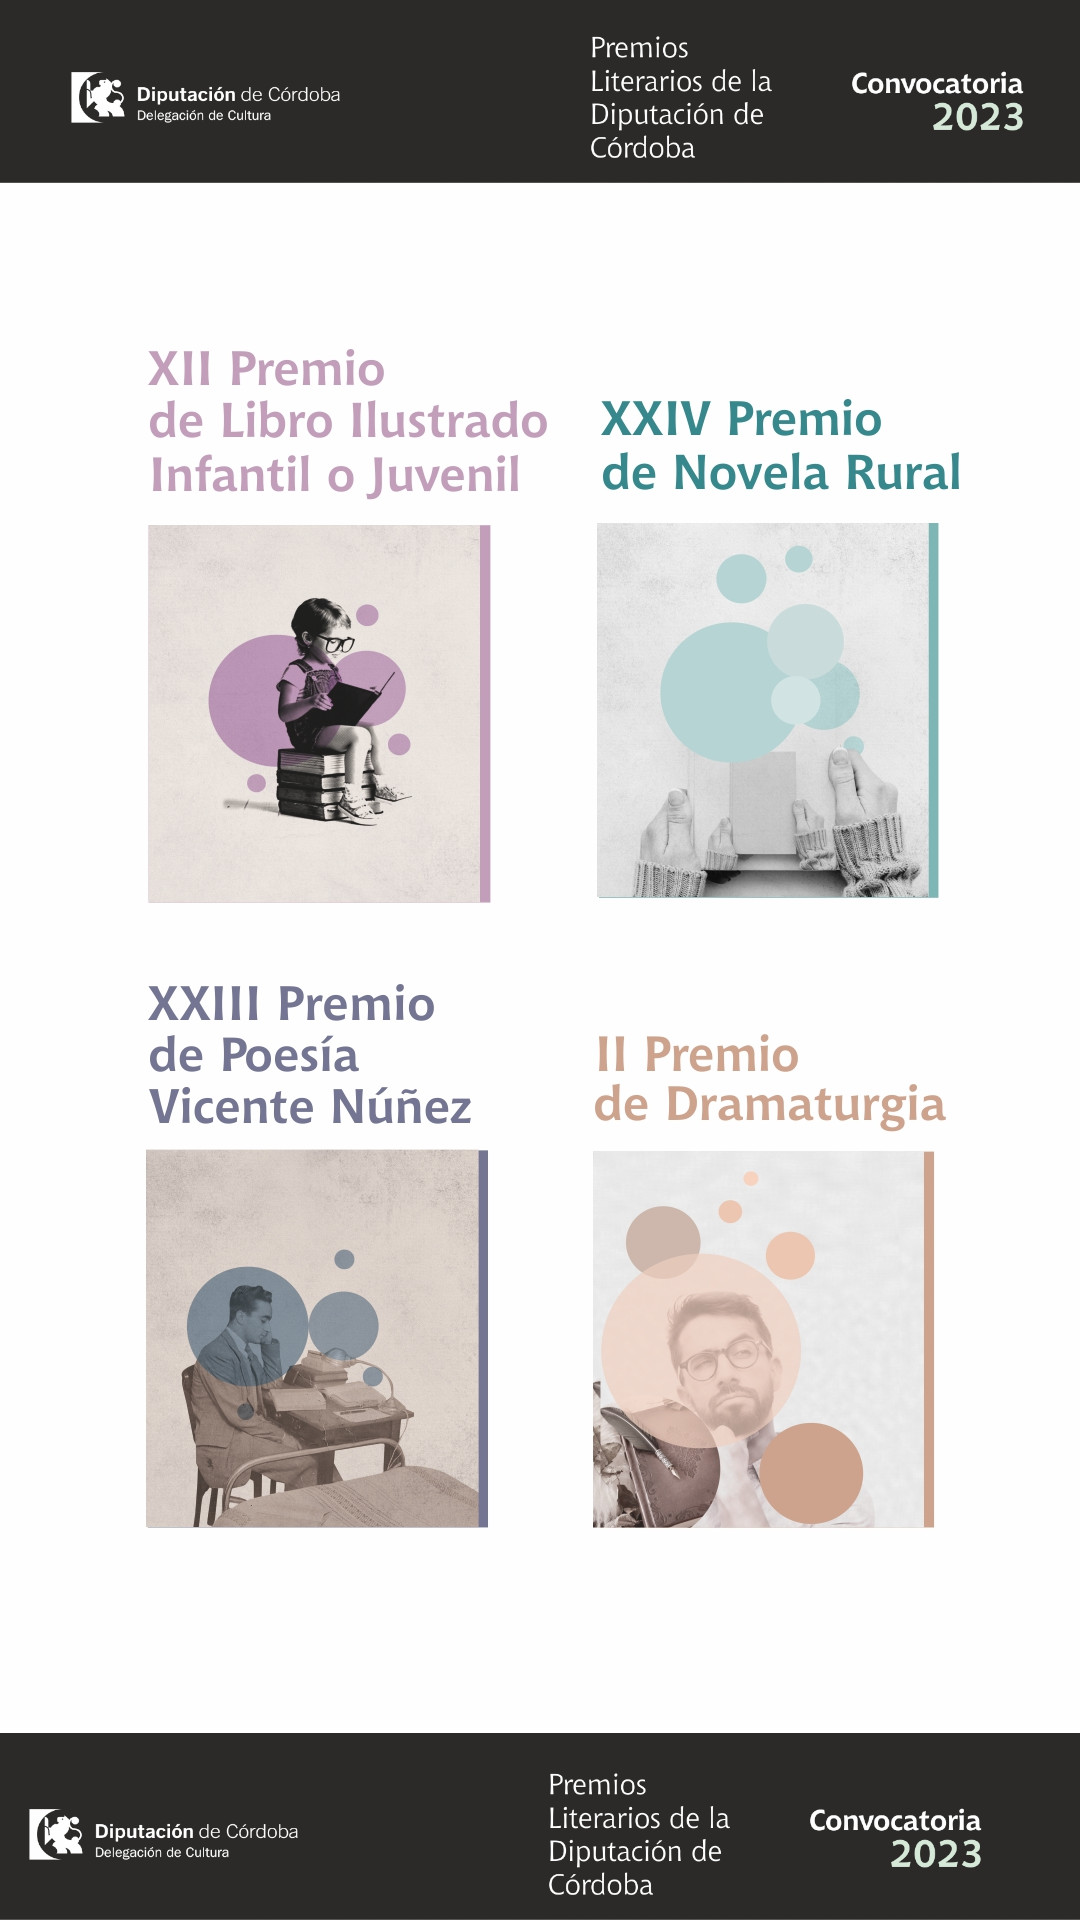 Descubre los premios literarios de la Diputación de Córdoba y participa